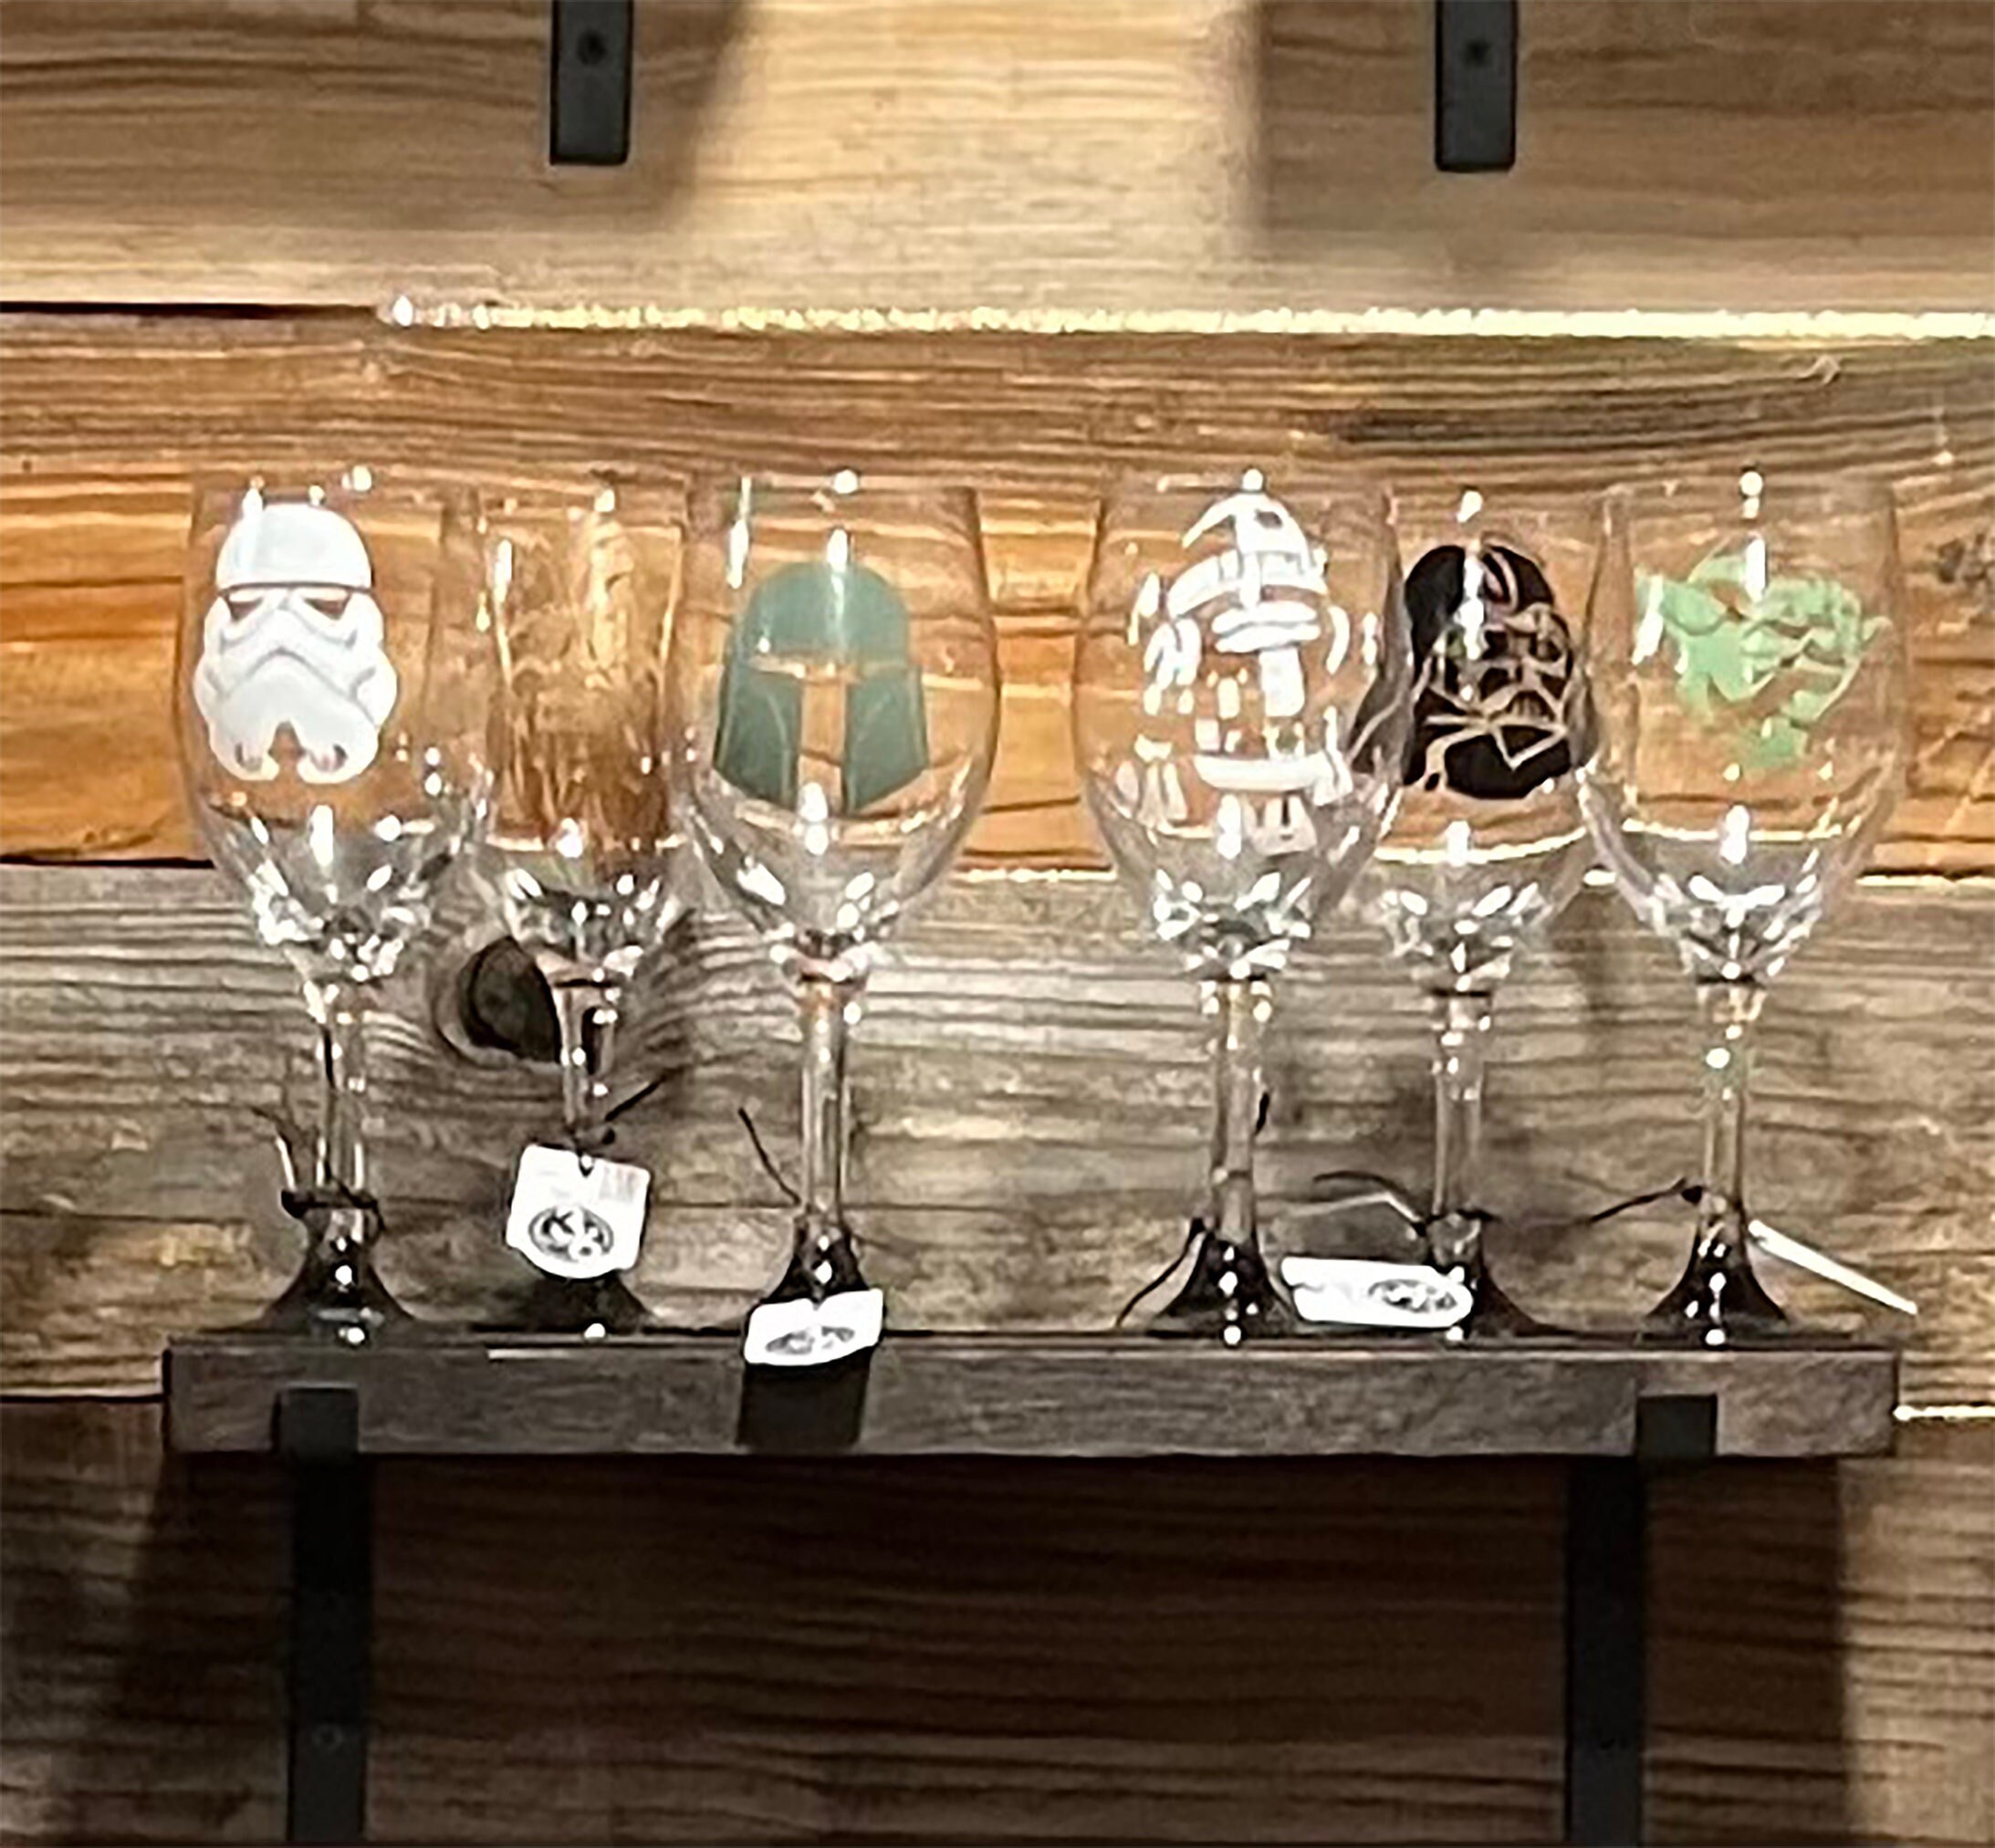 Star Wars Inspired Wine Glasses || Wine Glasses Set of 4